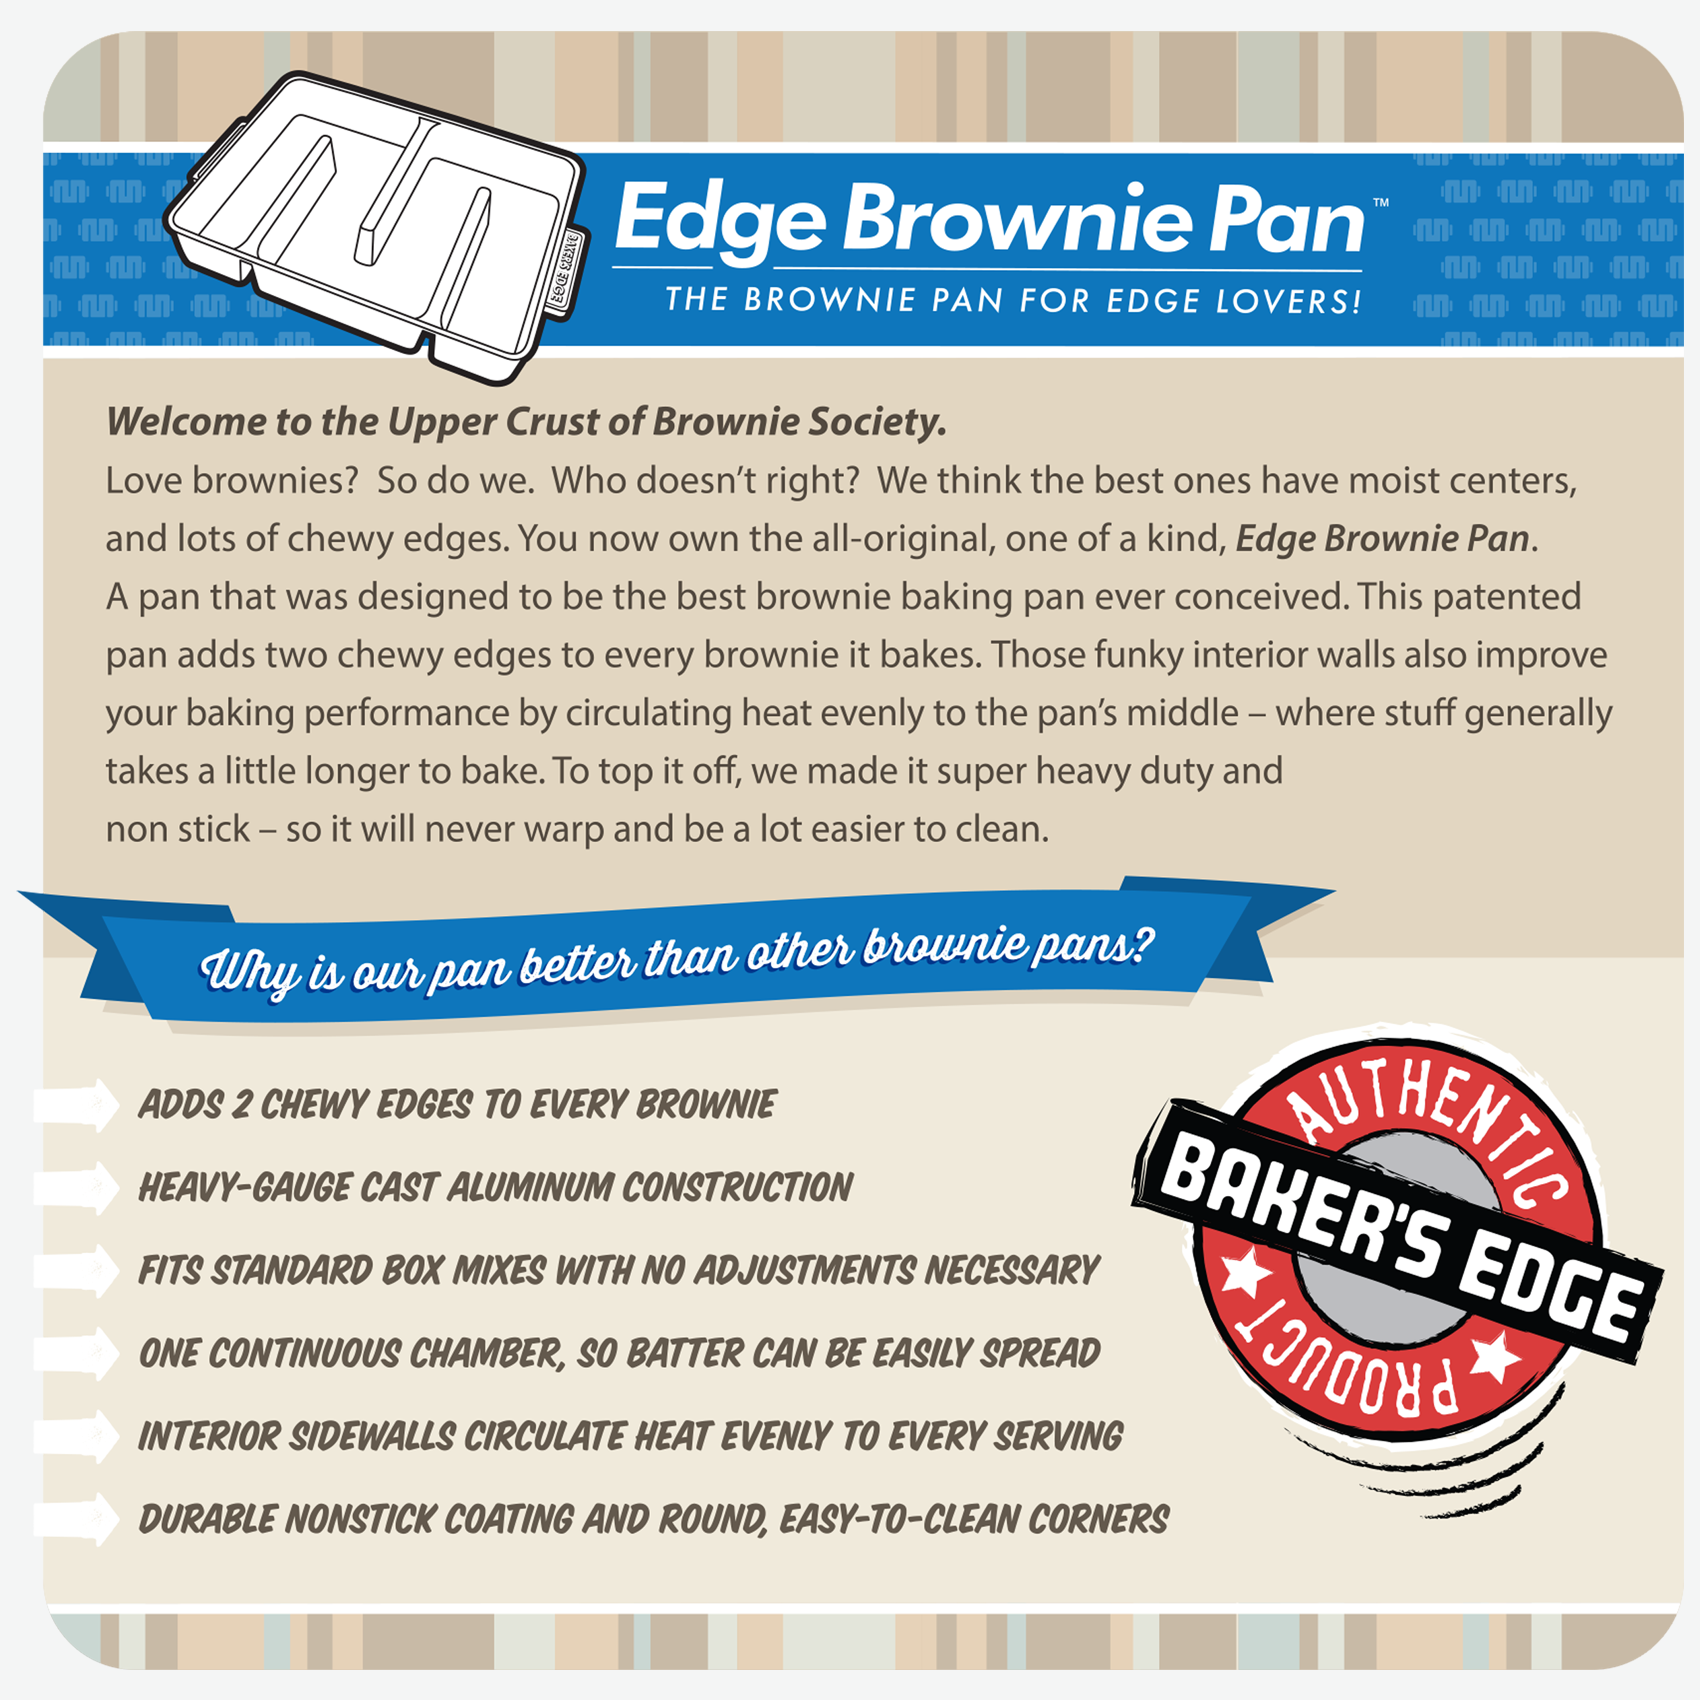 Baker's Edge Nonstick Brownie Pan